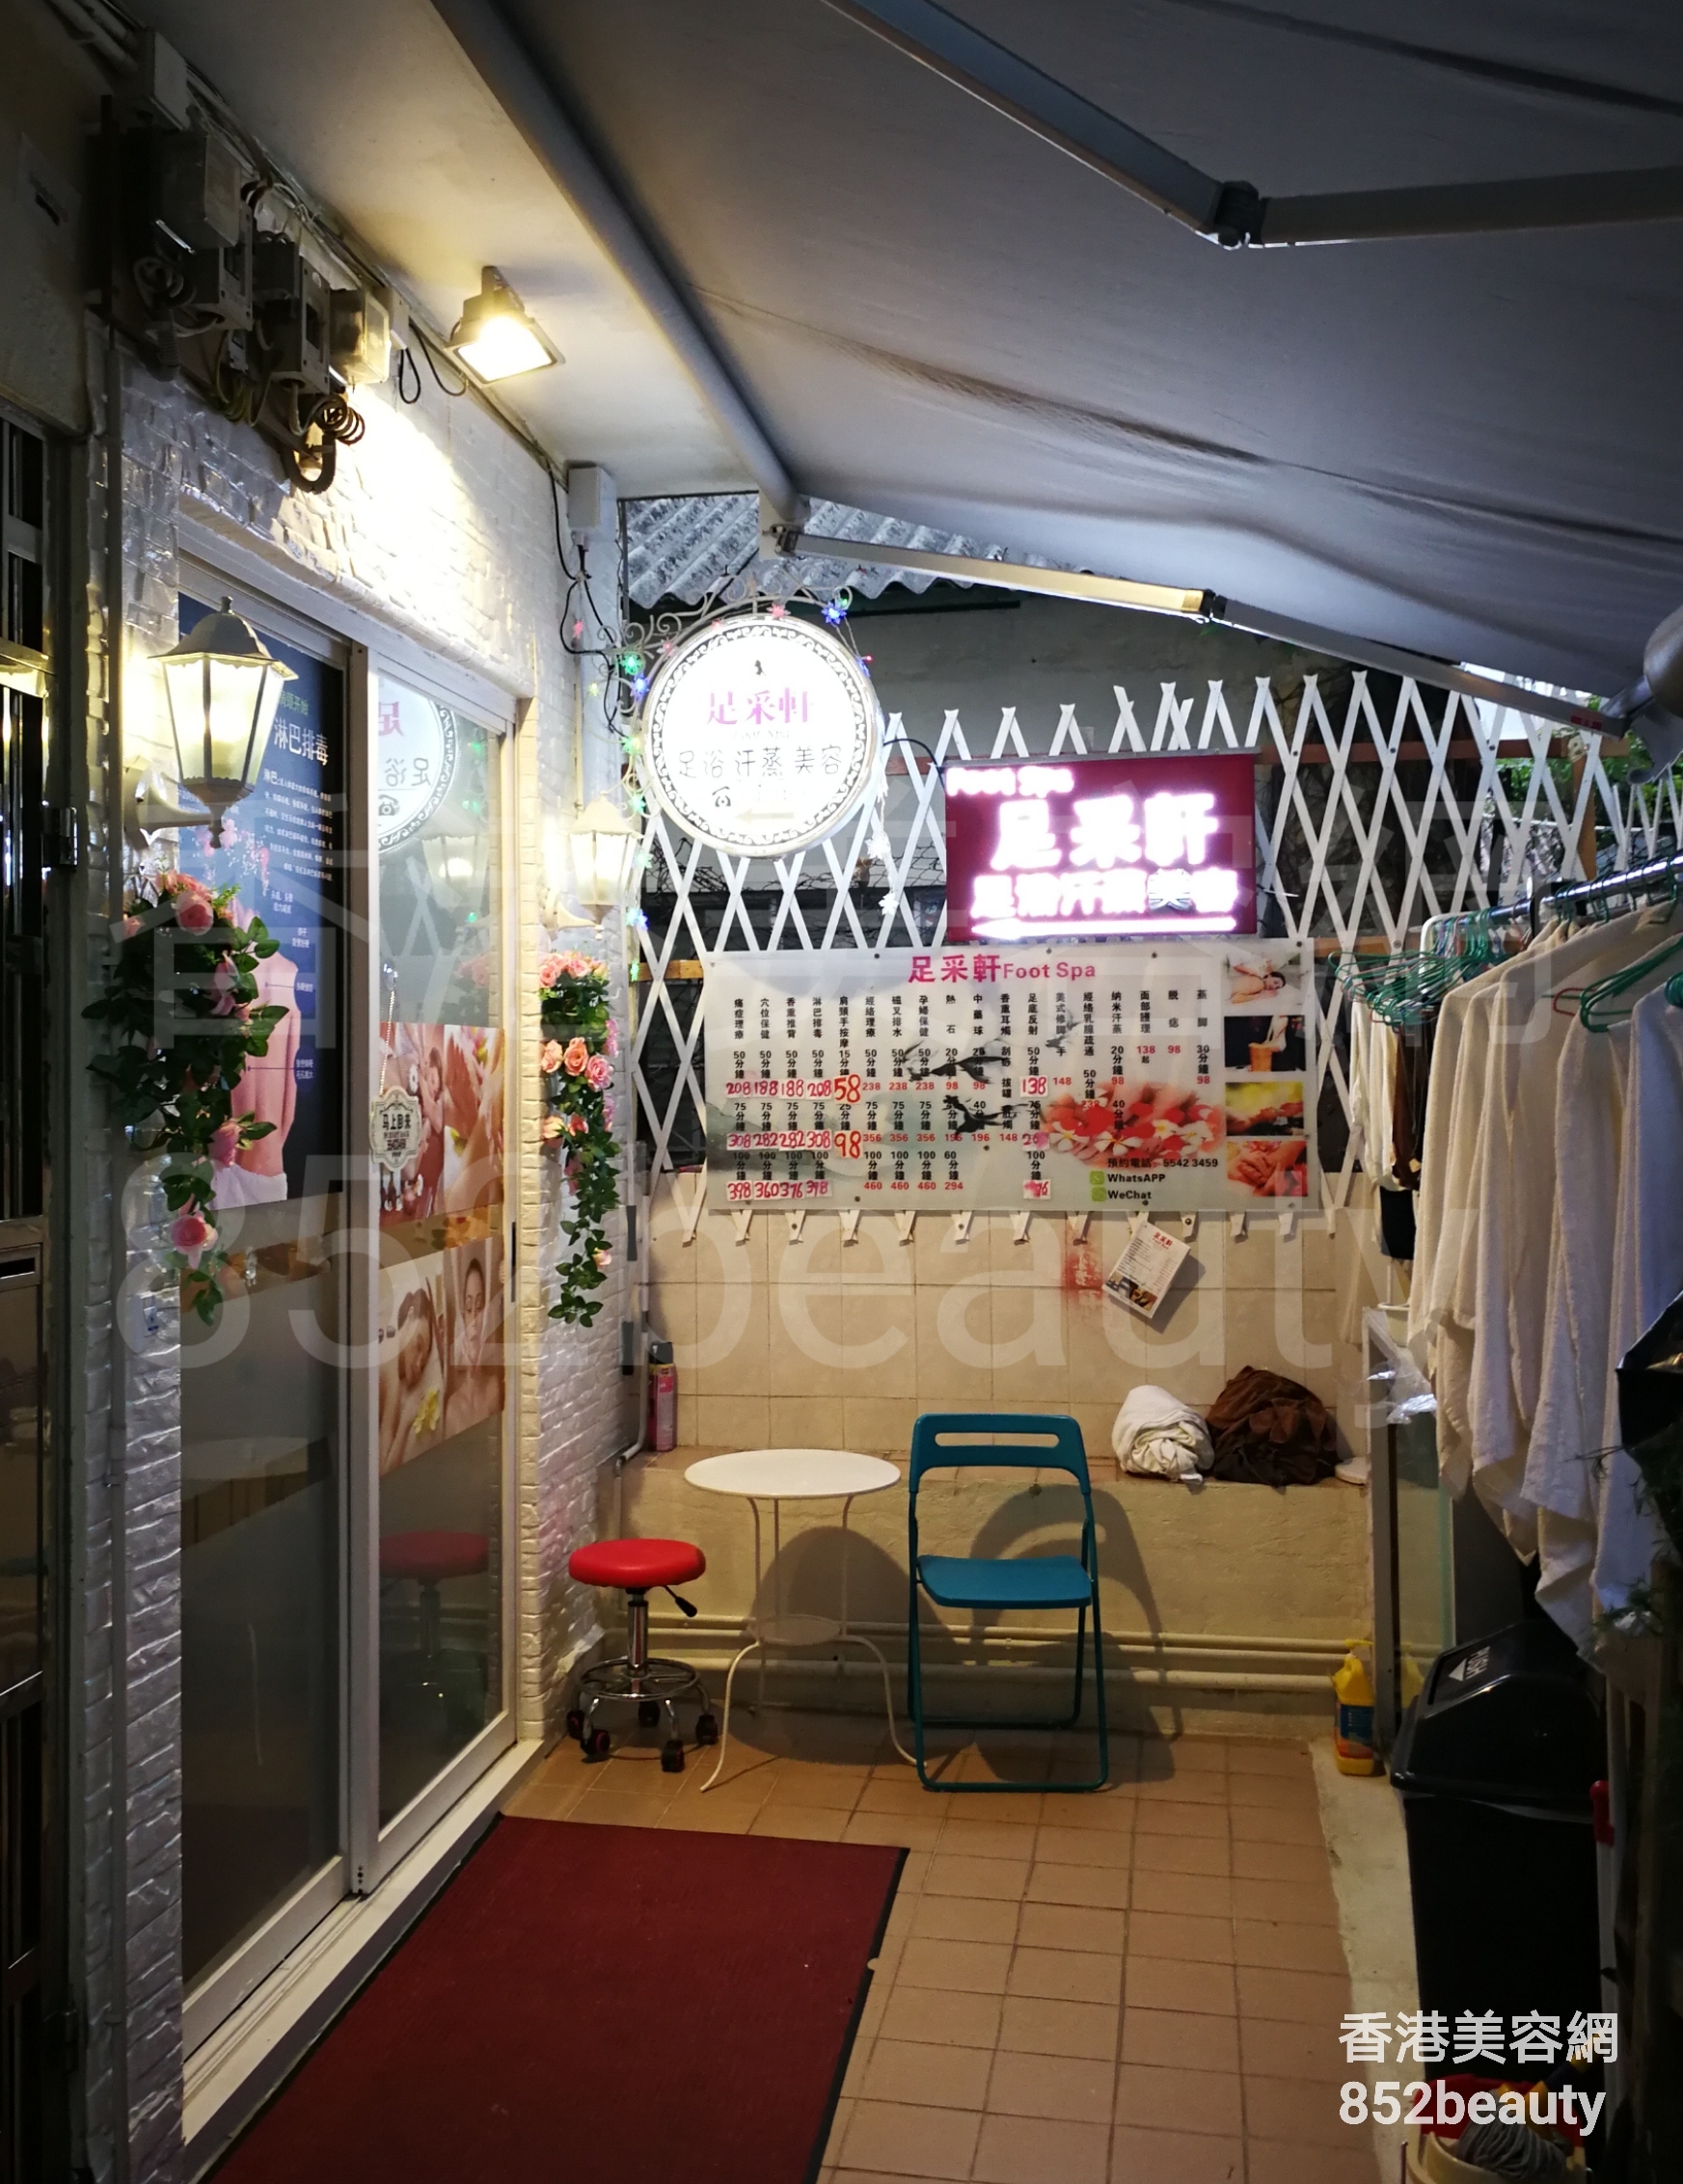 香港美容網 Hong Kong Beauty Salon 美容院 / 美容師: 足采軒